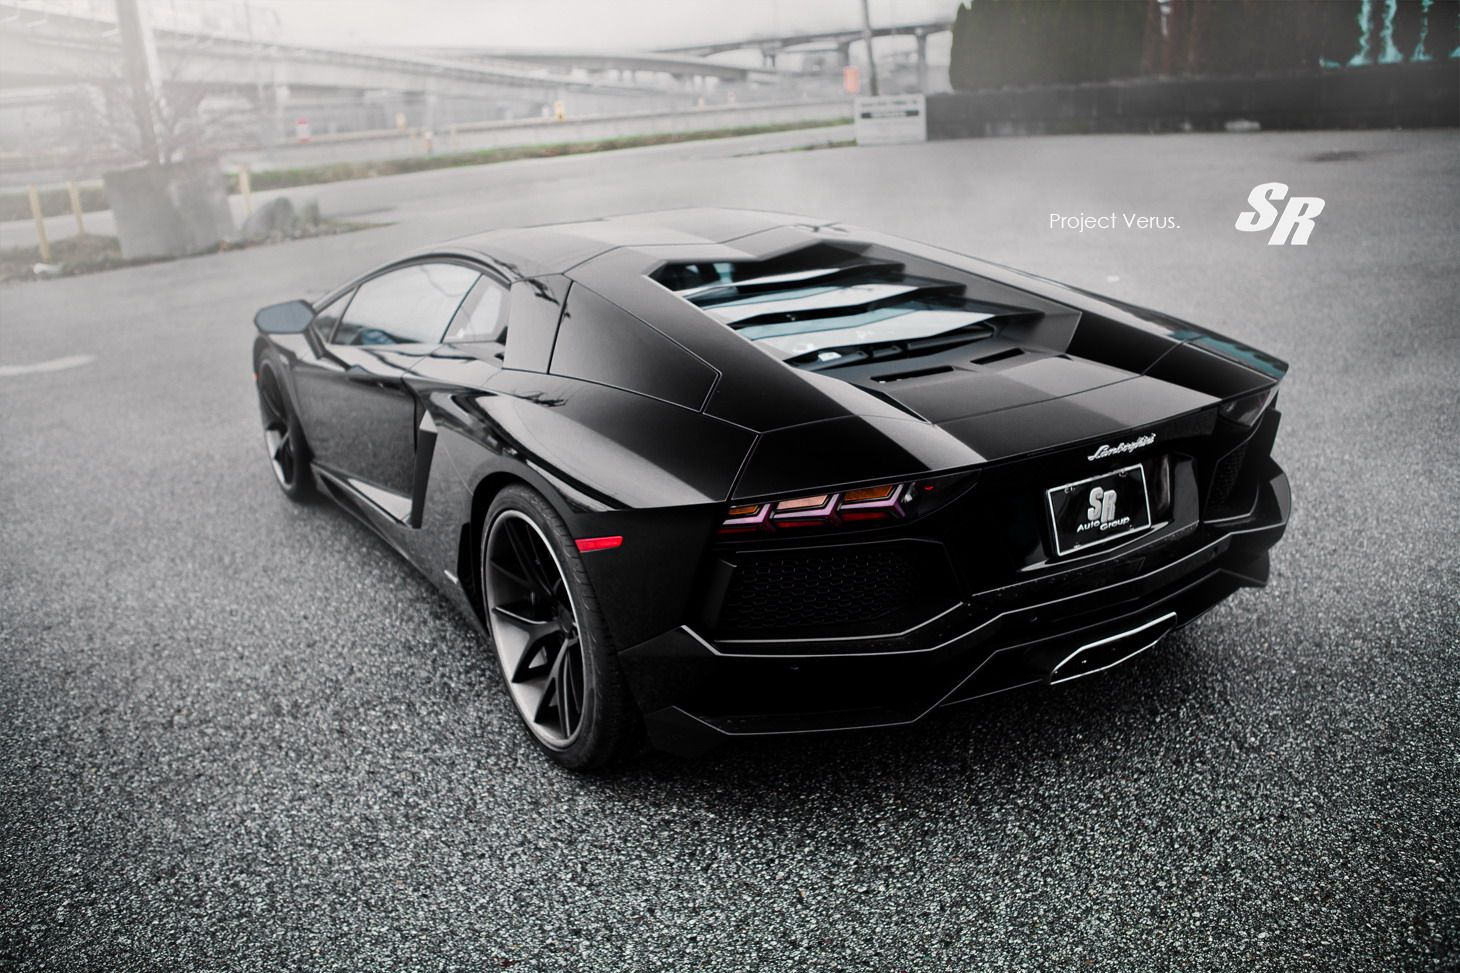 2012 Lamborghini Aventador Verus by SR Auto Group